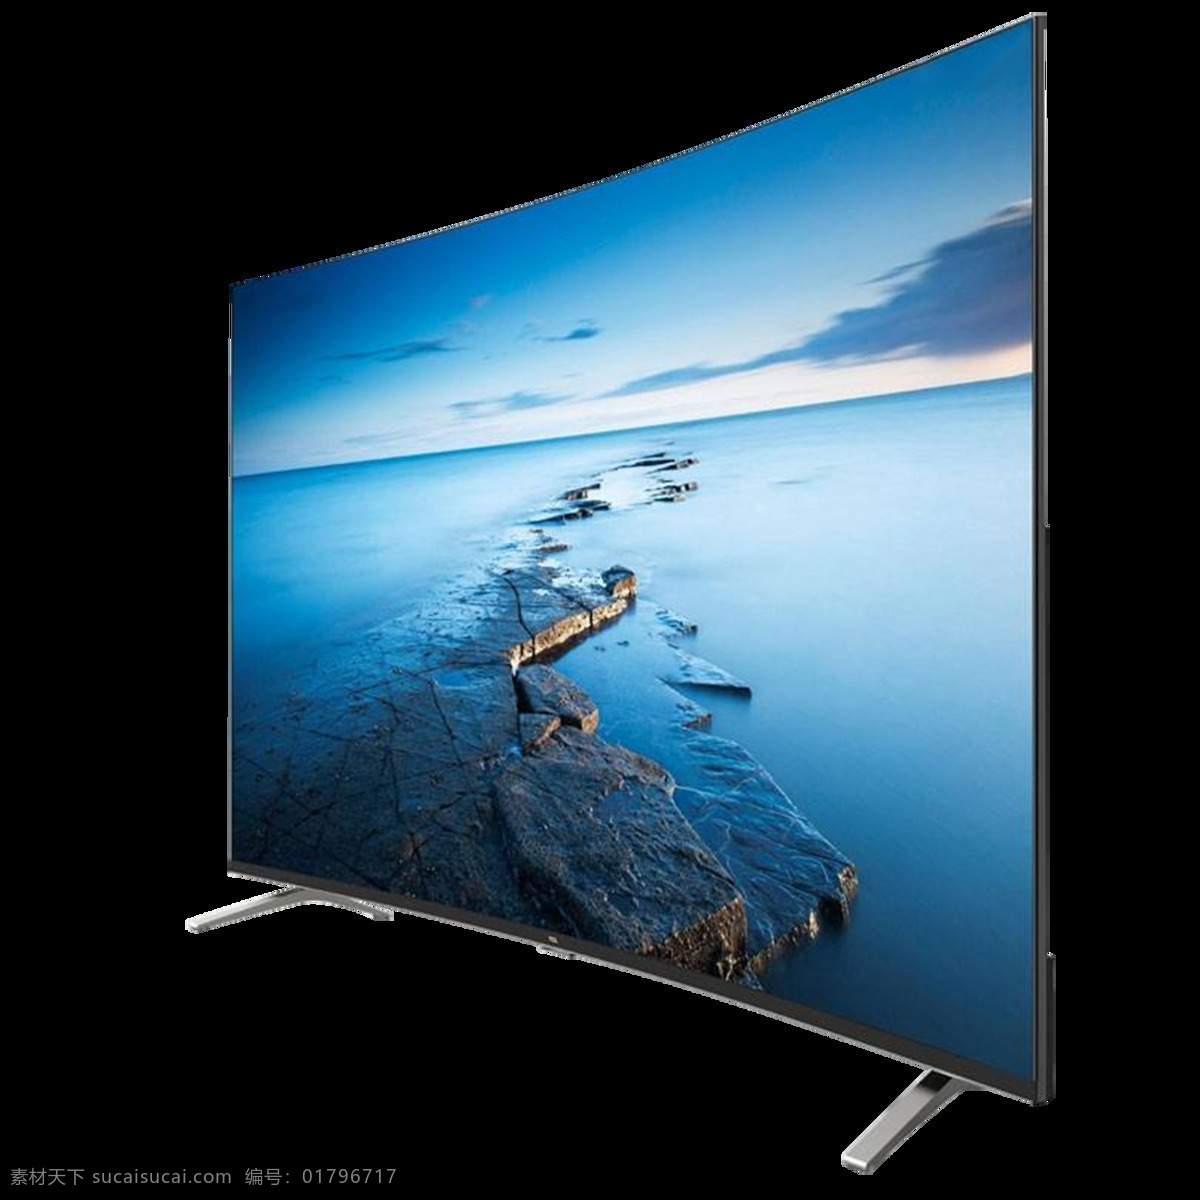 液晶电视 电视 液晶 科技 数码 产品 超薄 高清 4k hd画质 蓝光 画质